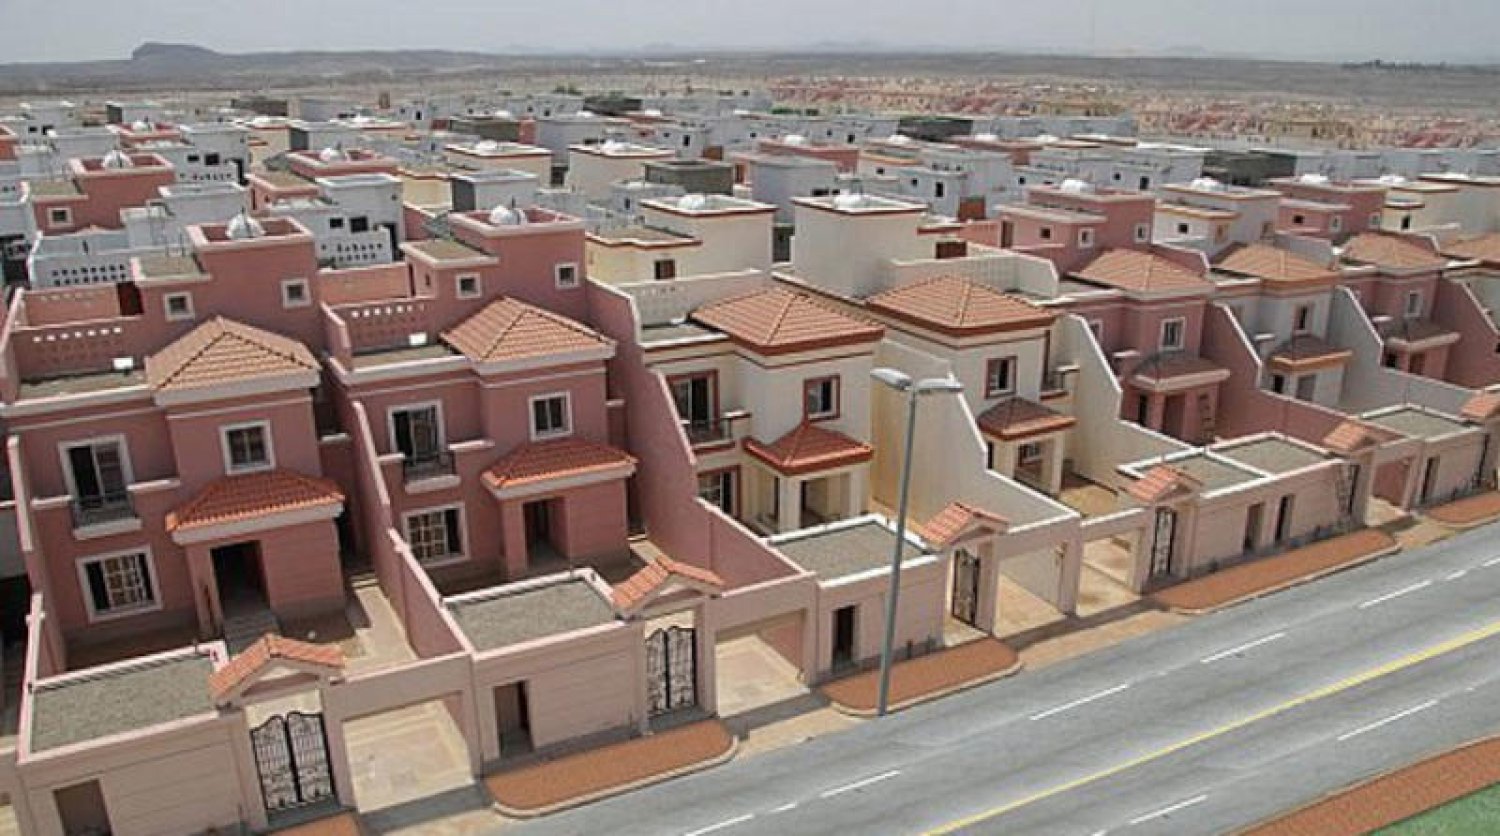 4419 وحدة بقيمة 800 مليون! توفير حلول سكنية للأسر المحتاجة في مختلف مناطق المملكة!